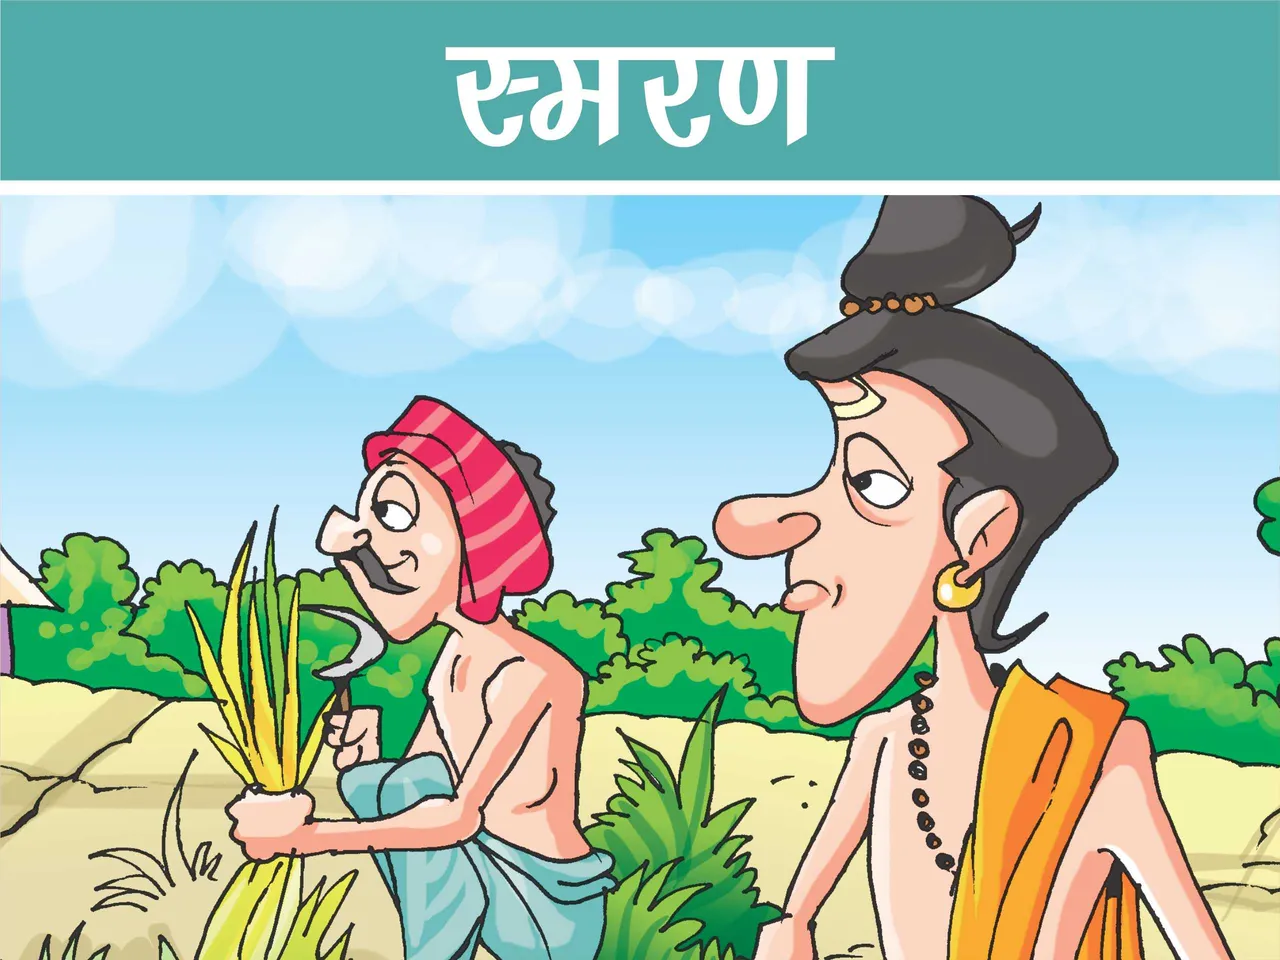 Saint And Farmer Cartoon Image